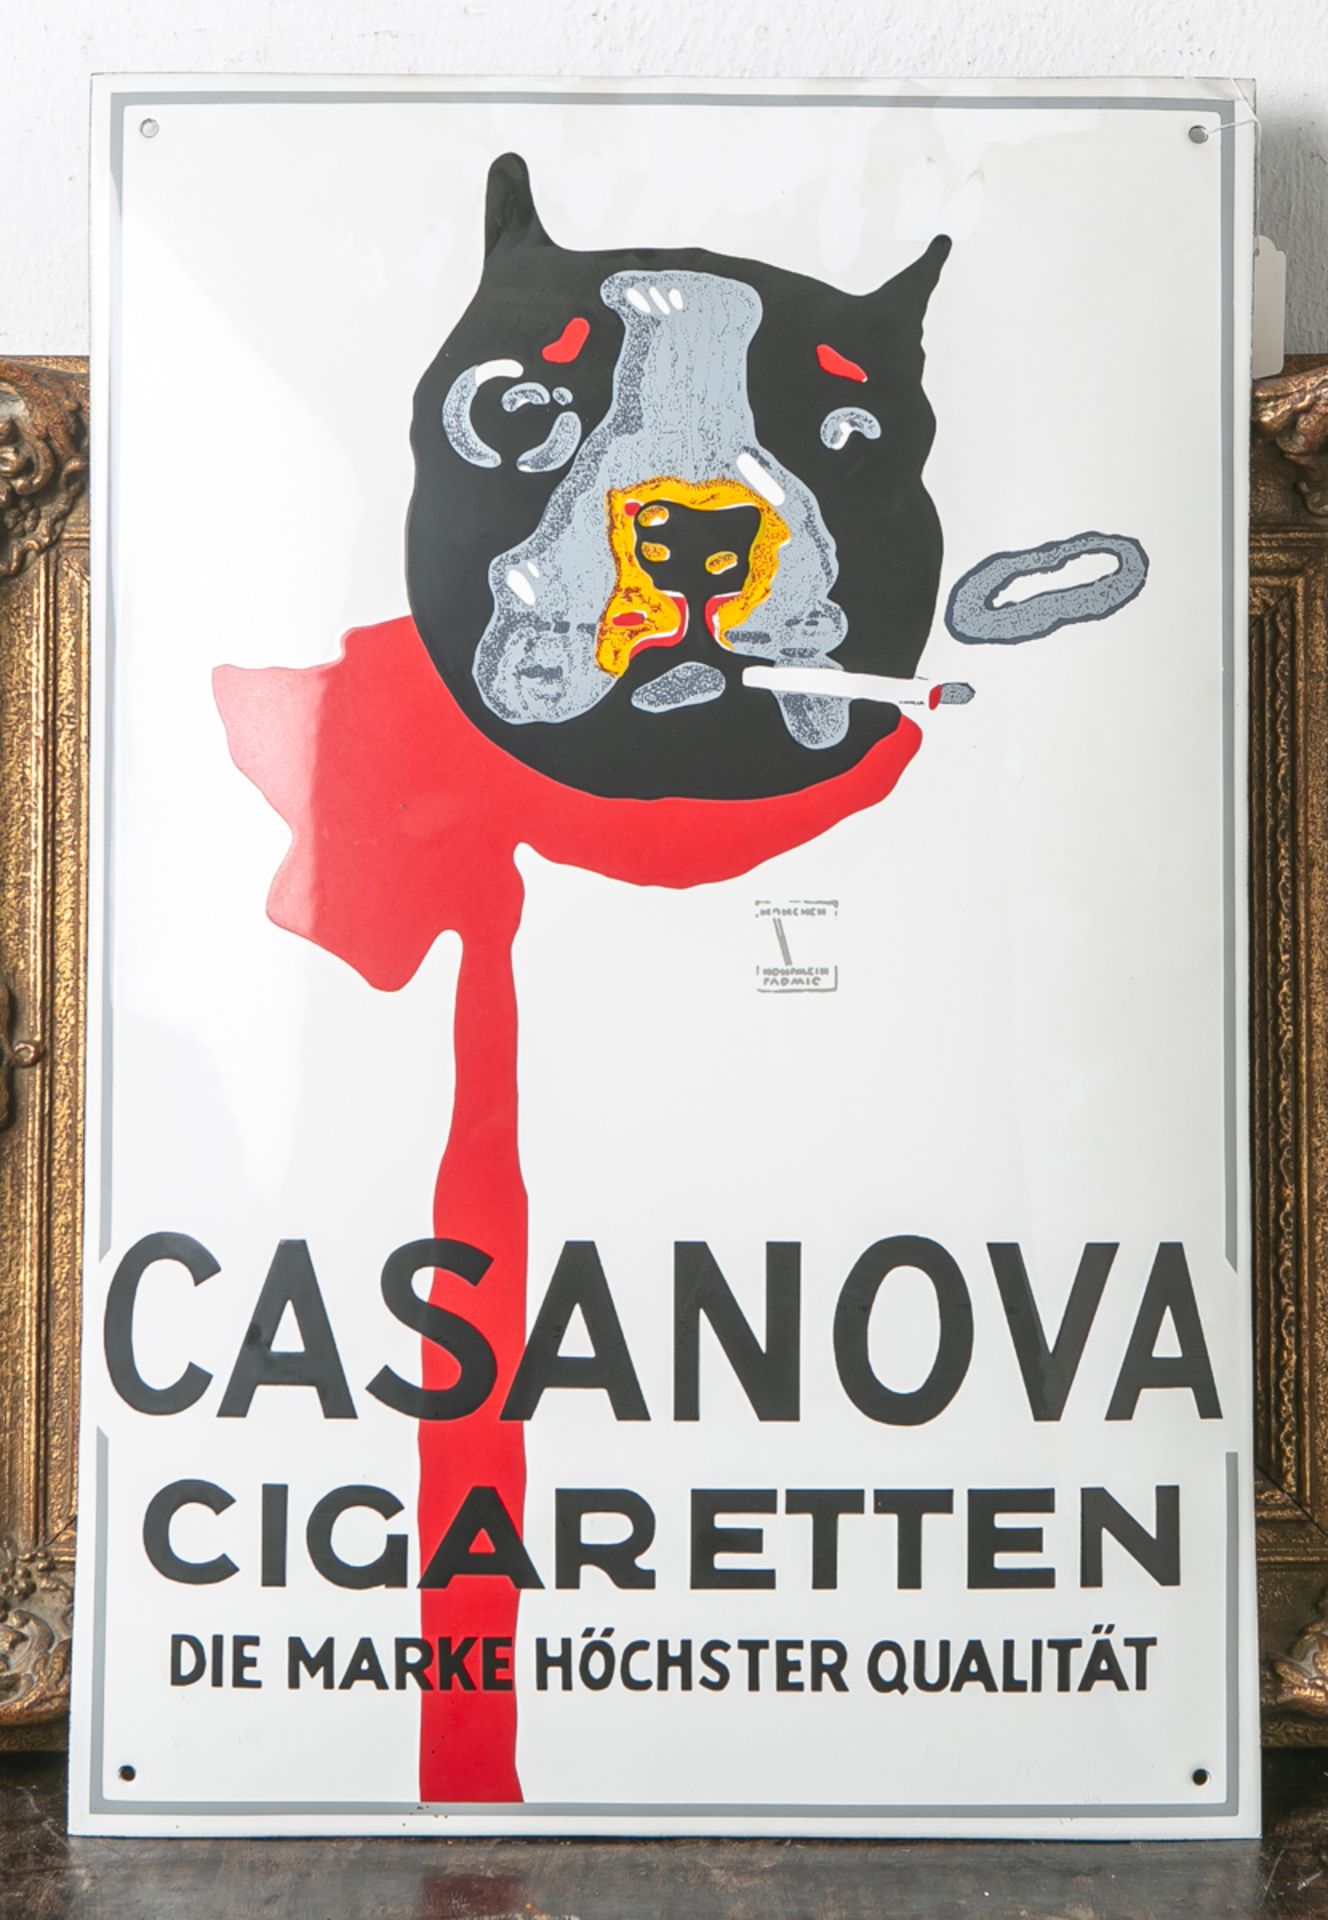 Emailschild "Casanova Cigaretten - Die Marke höchster Qualität" (wohl 20. Jahrhundert),Darstellung